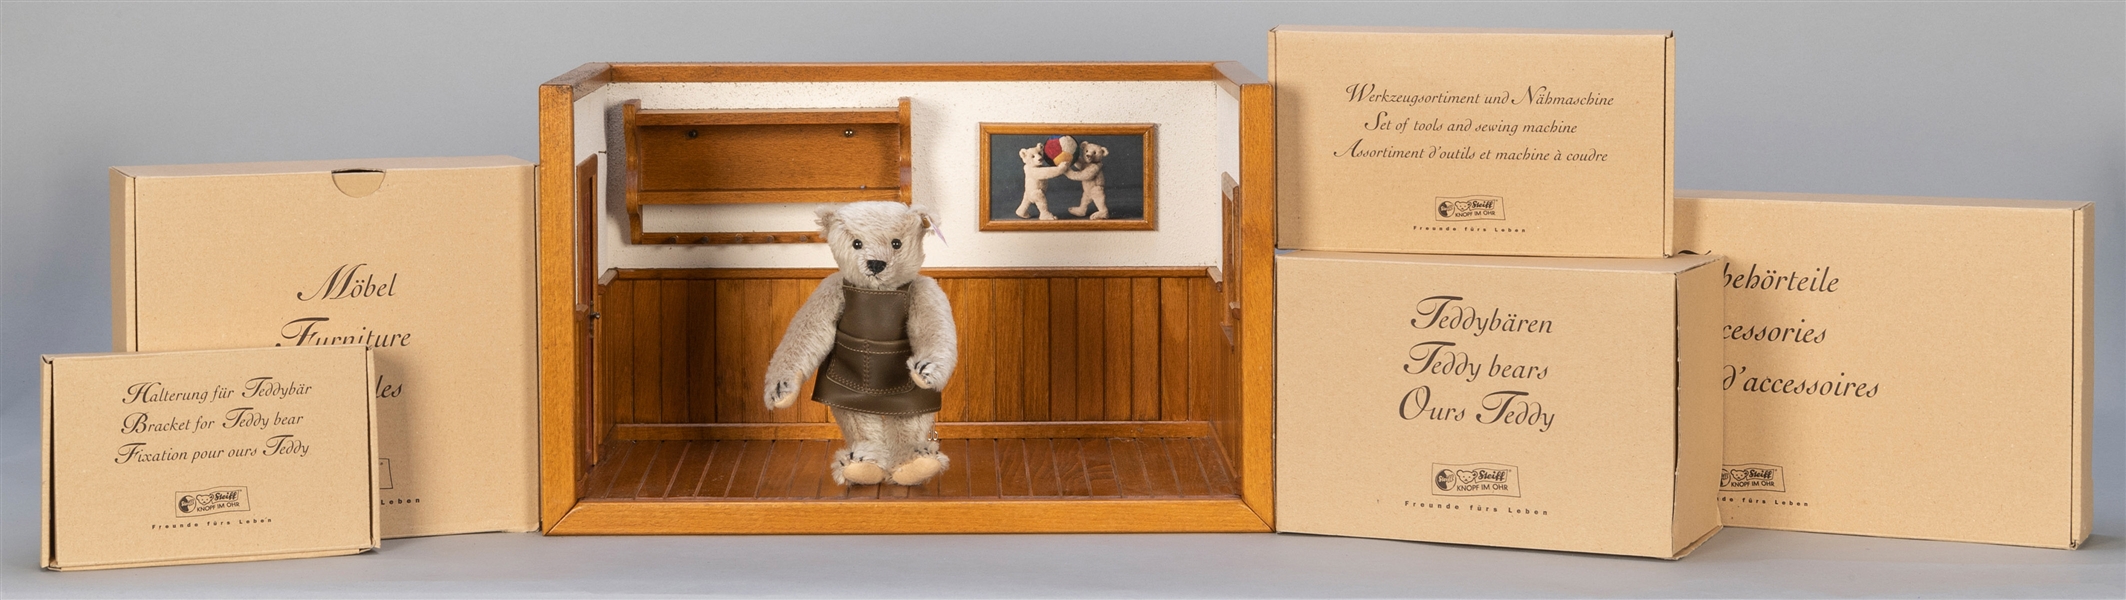  Steiff Teddy Bear Workshop Limited Edition Display Set. 200...